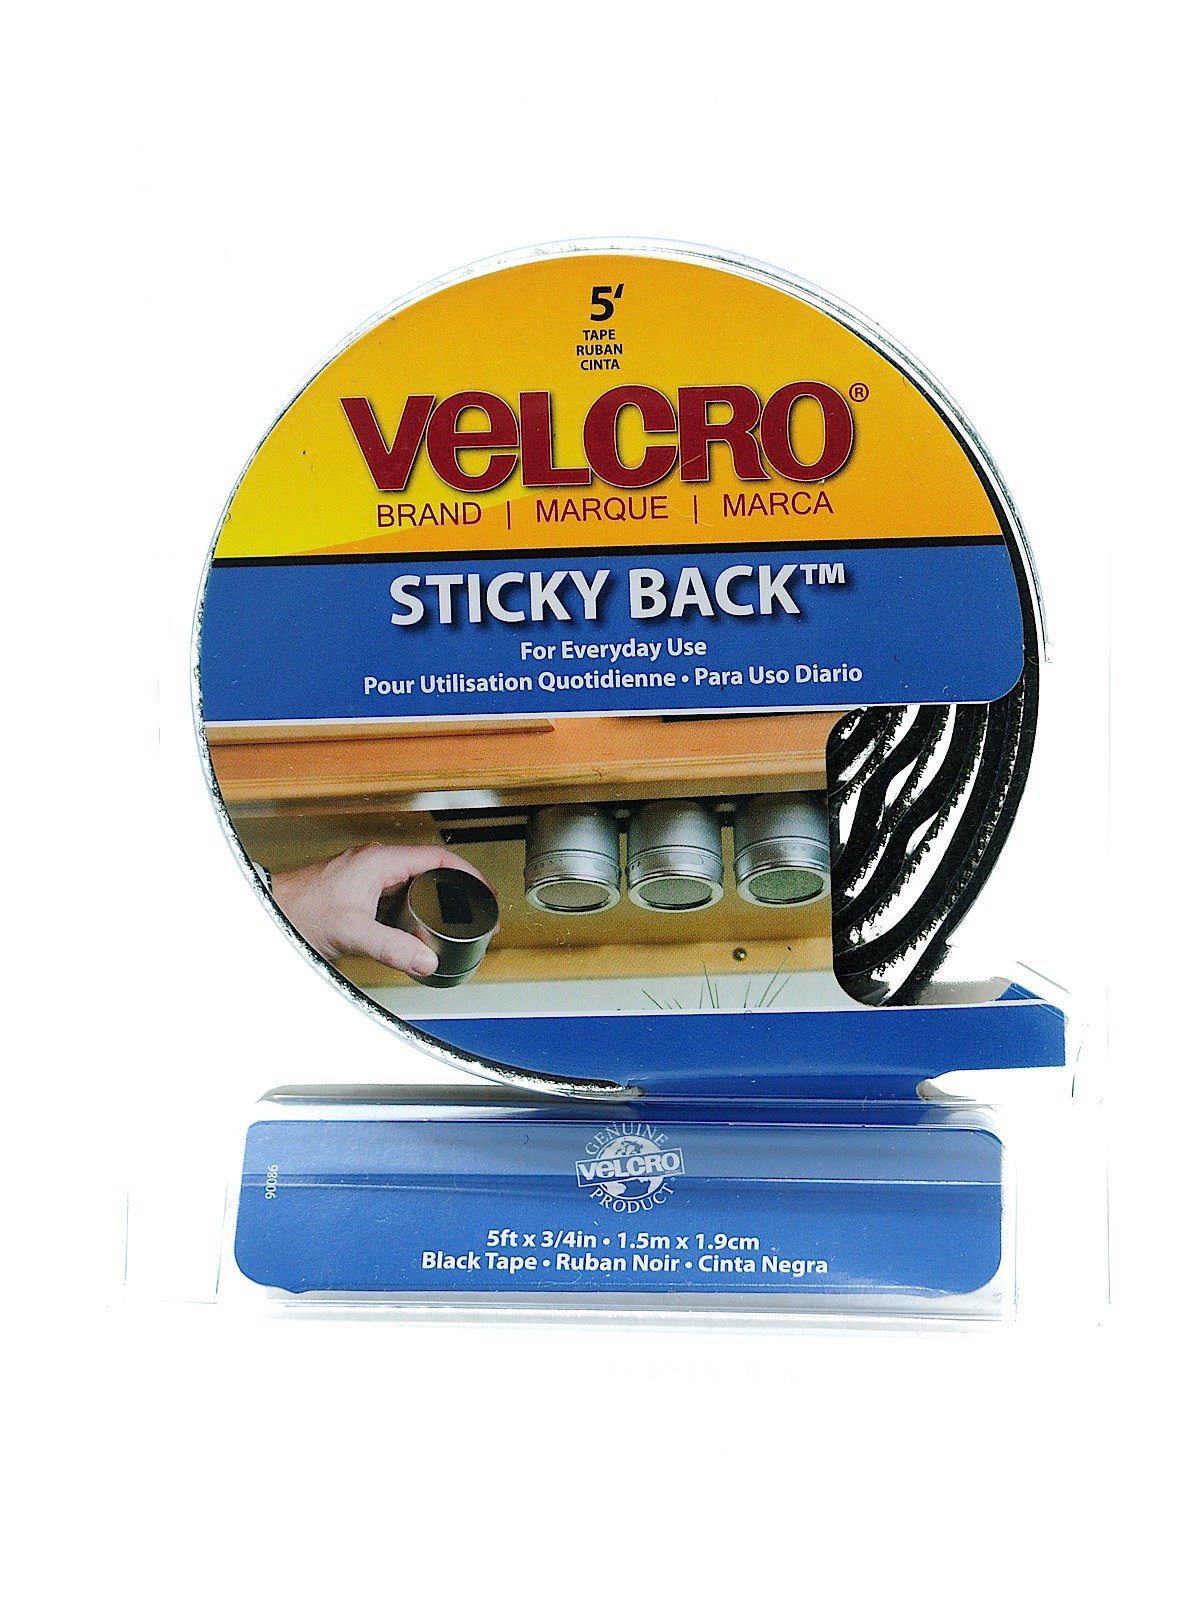 Velcro Brand - Closure Easy To Use Dispenser Packs